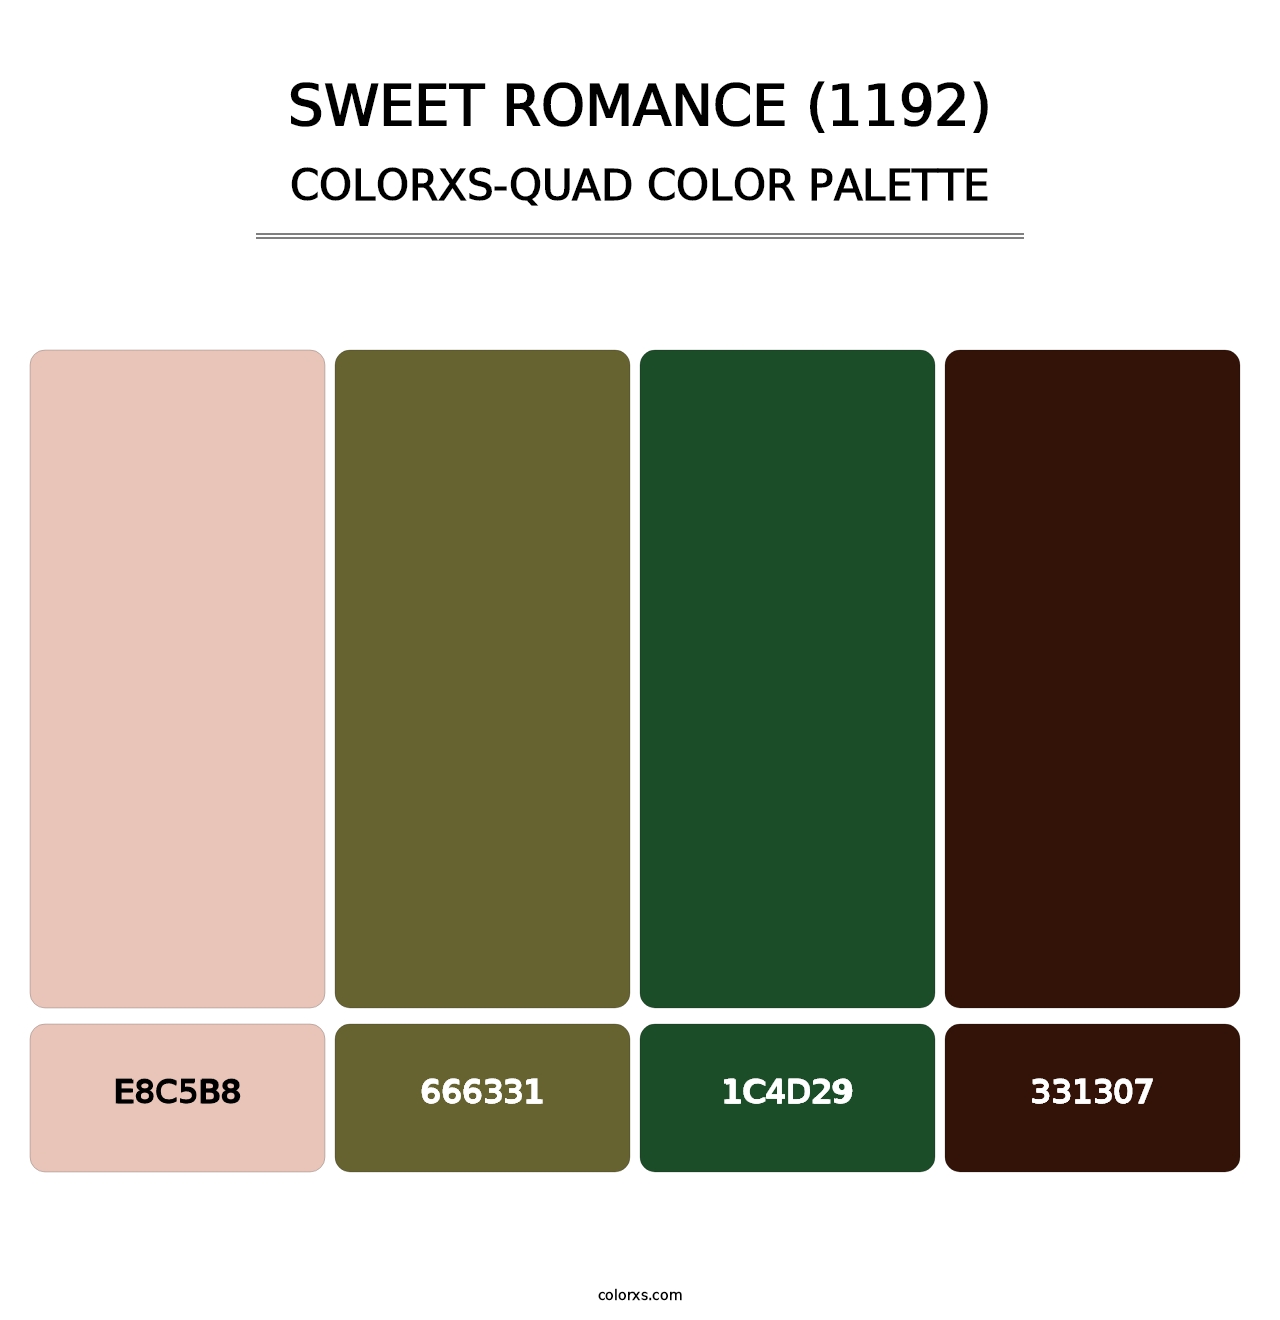 Sweet Romance (1192) - Colorxs Quad Palette